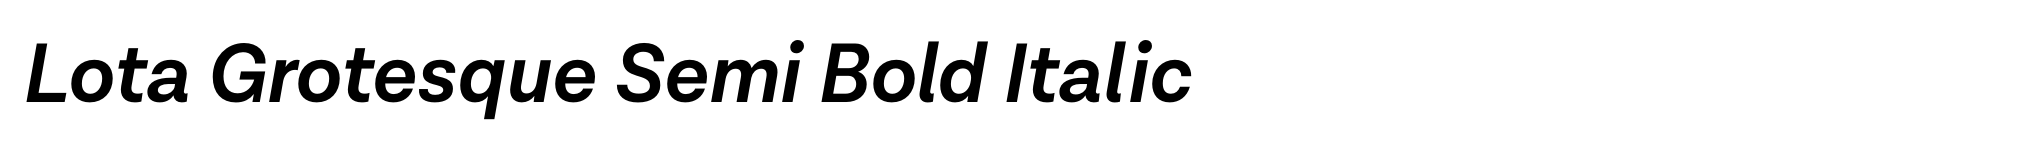 Lota Grotesque Semi Bold Italic image